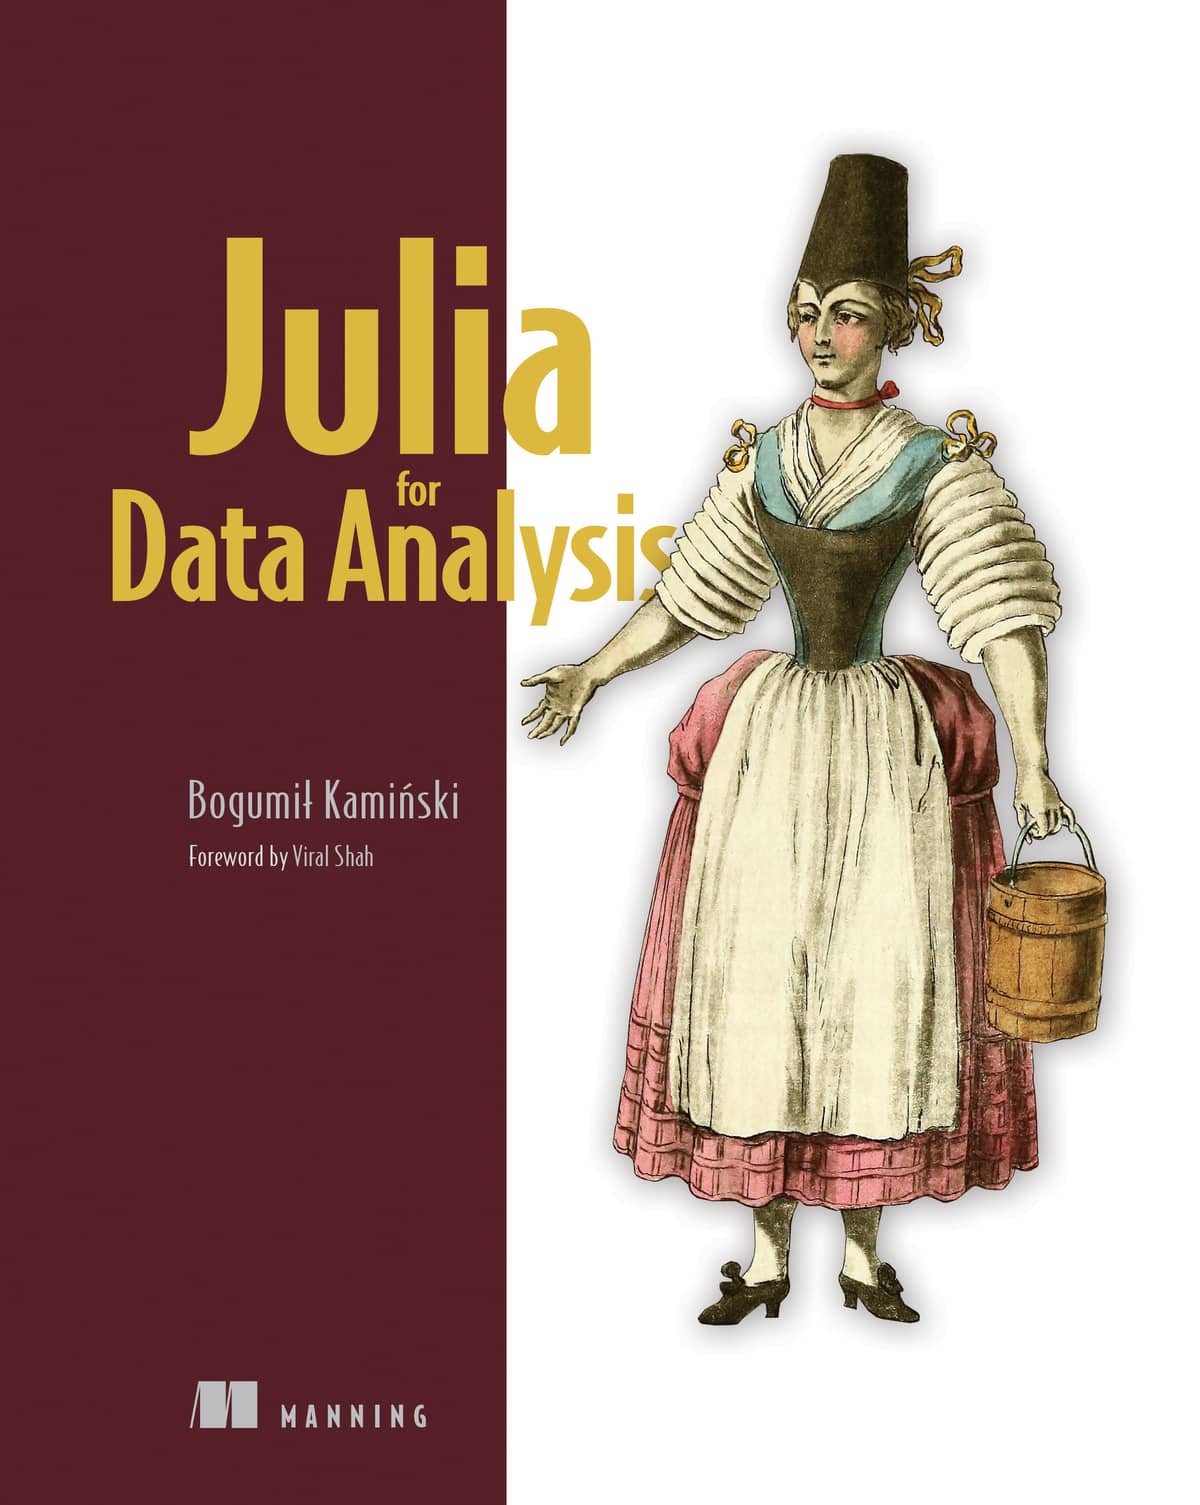 Julia for Data Analysis (Manning)